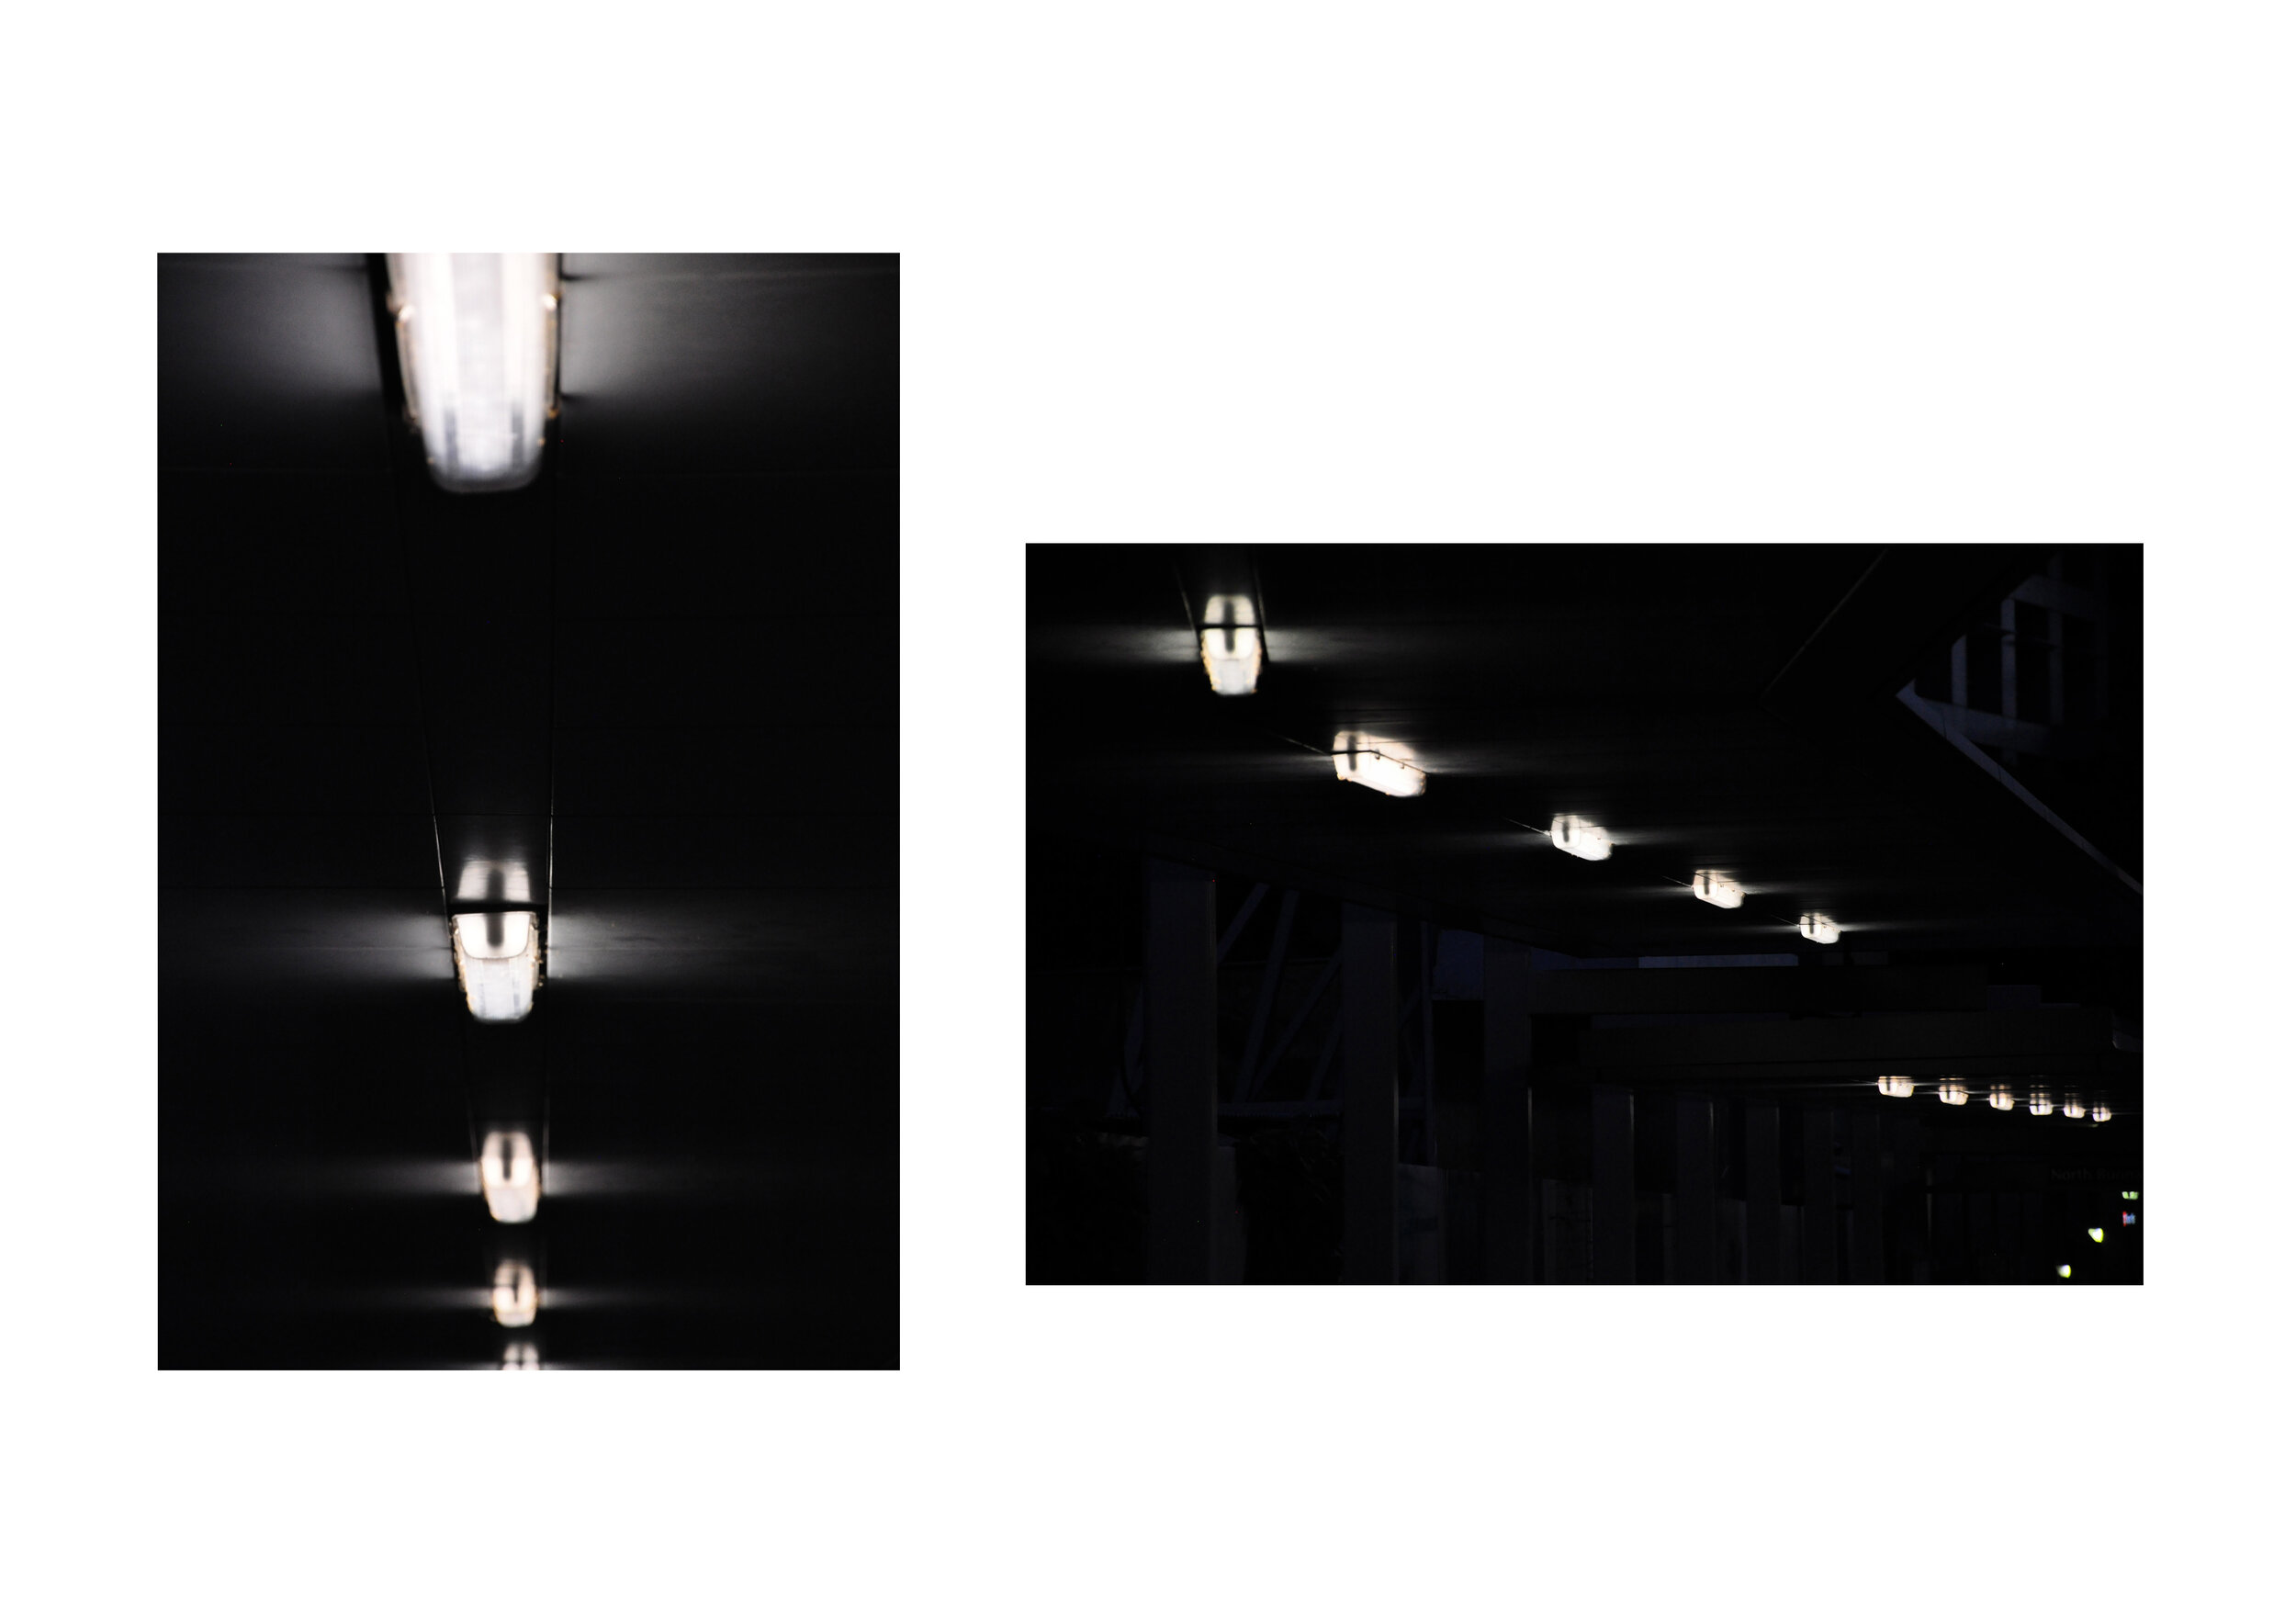 Light 02a + b, 2012 - Diptych